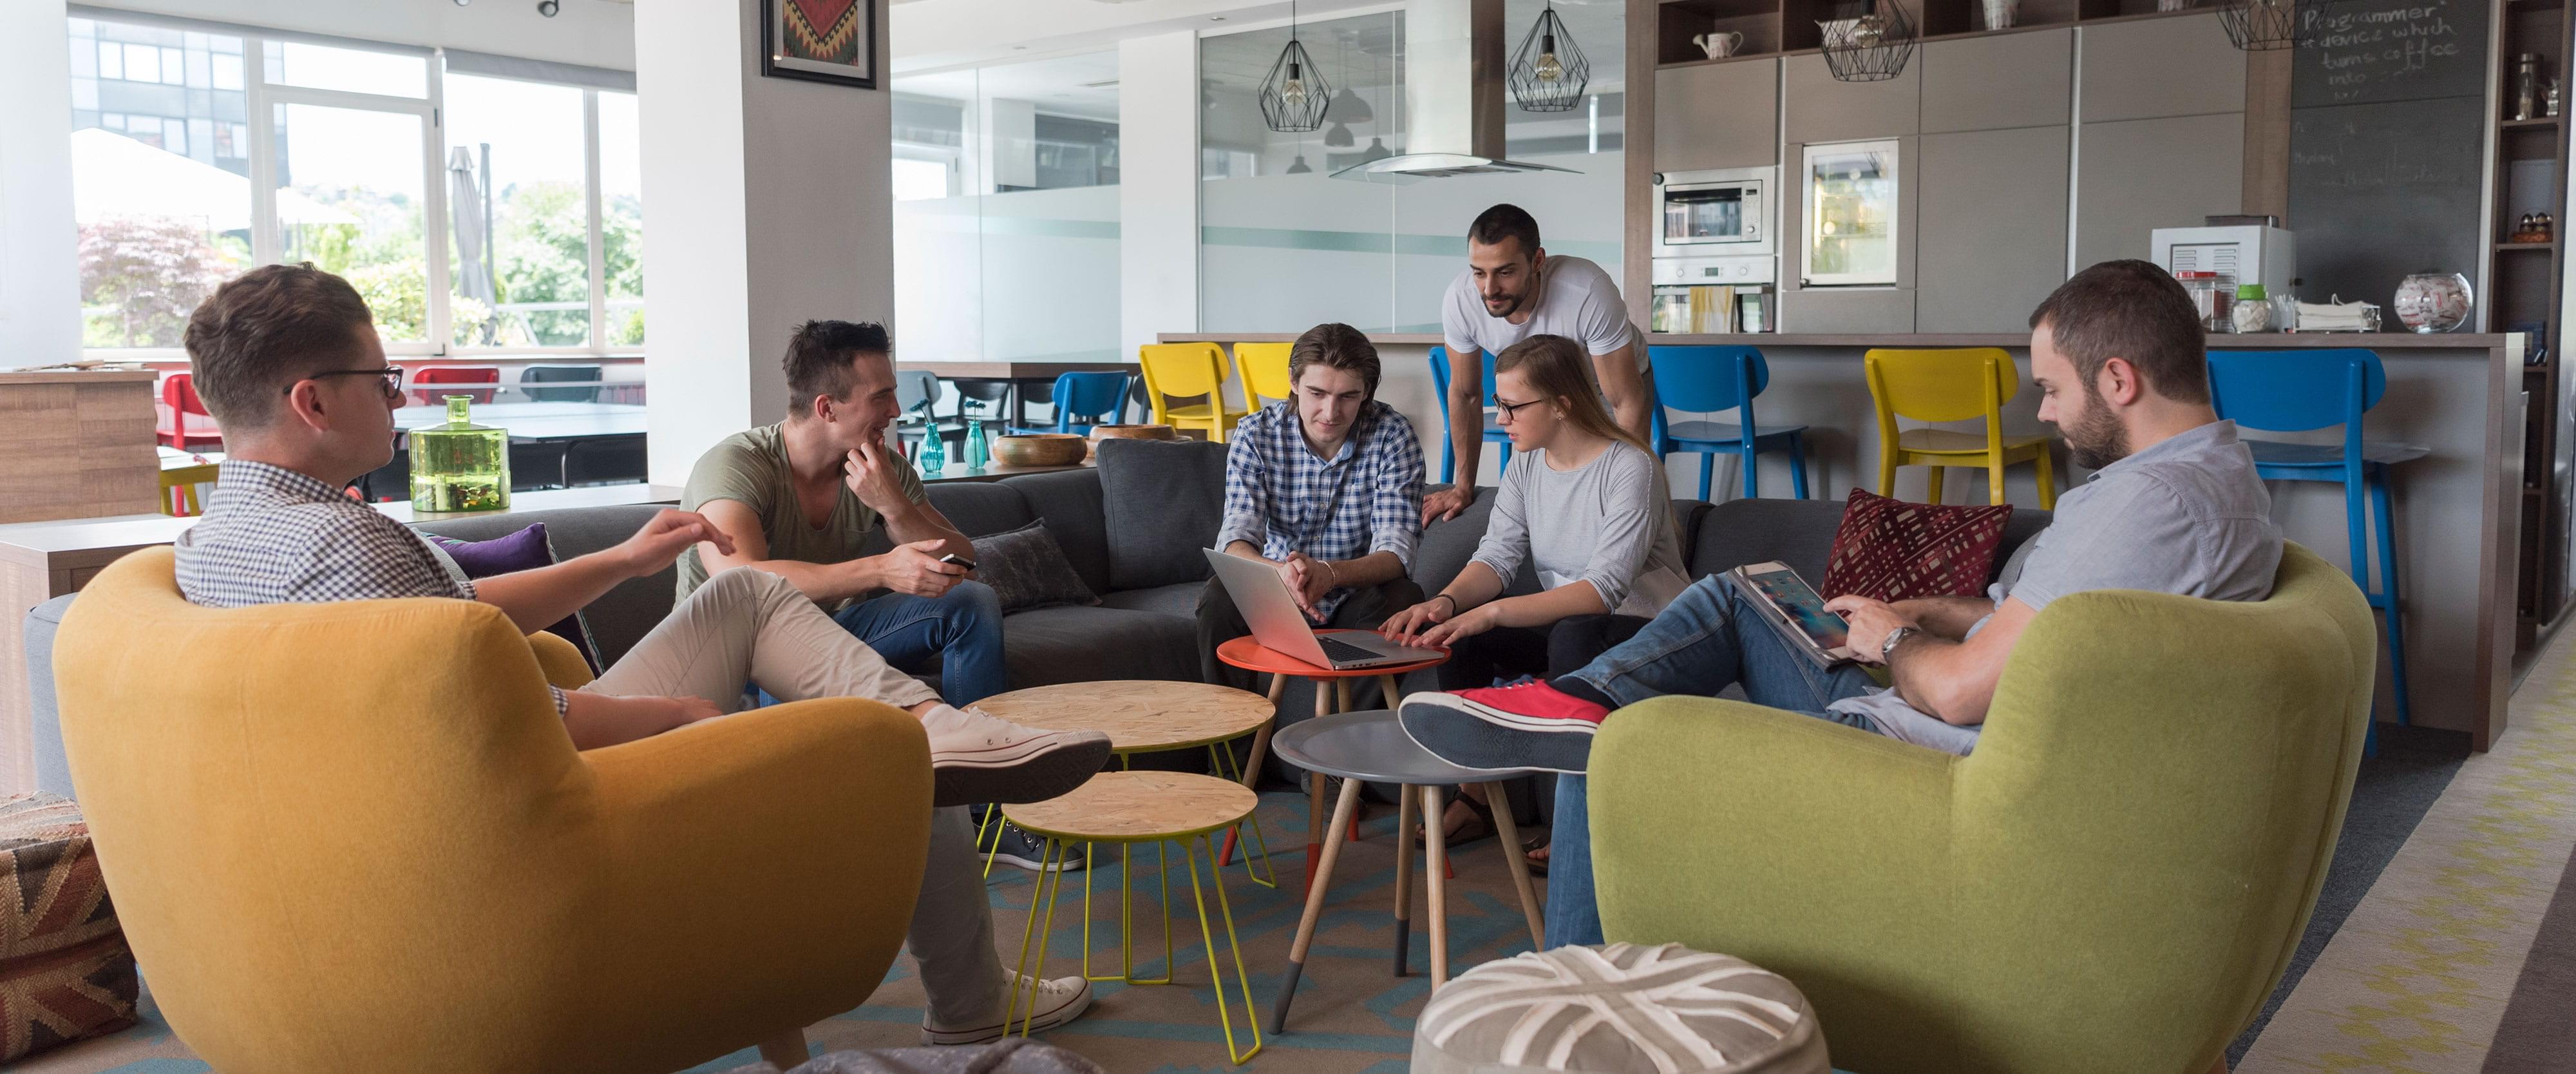 Besprechung einer Gruppe von sechs Personen, sitzend auf Sofa und Sesseln in moderner und gemütlicher Büro-Umgebung